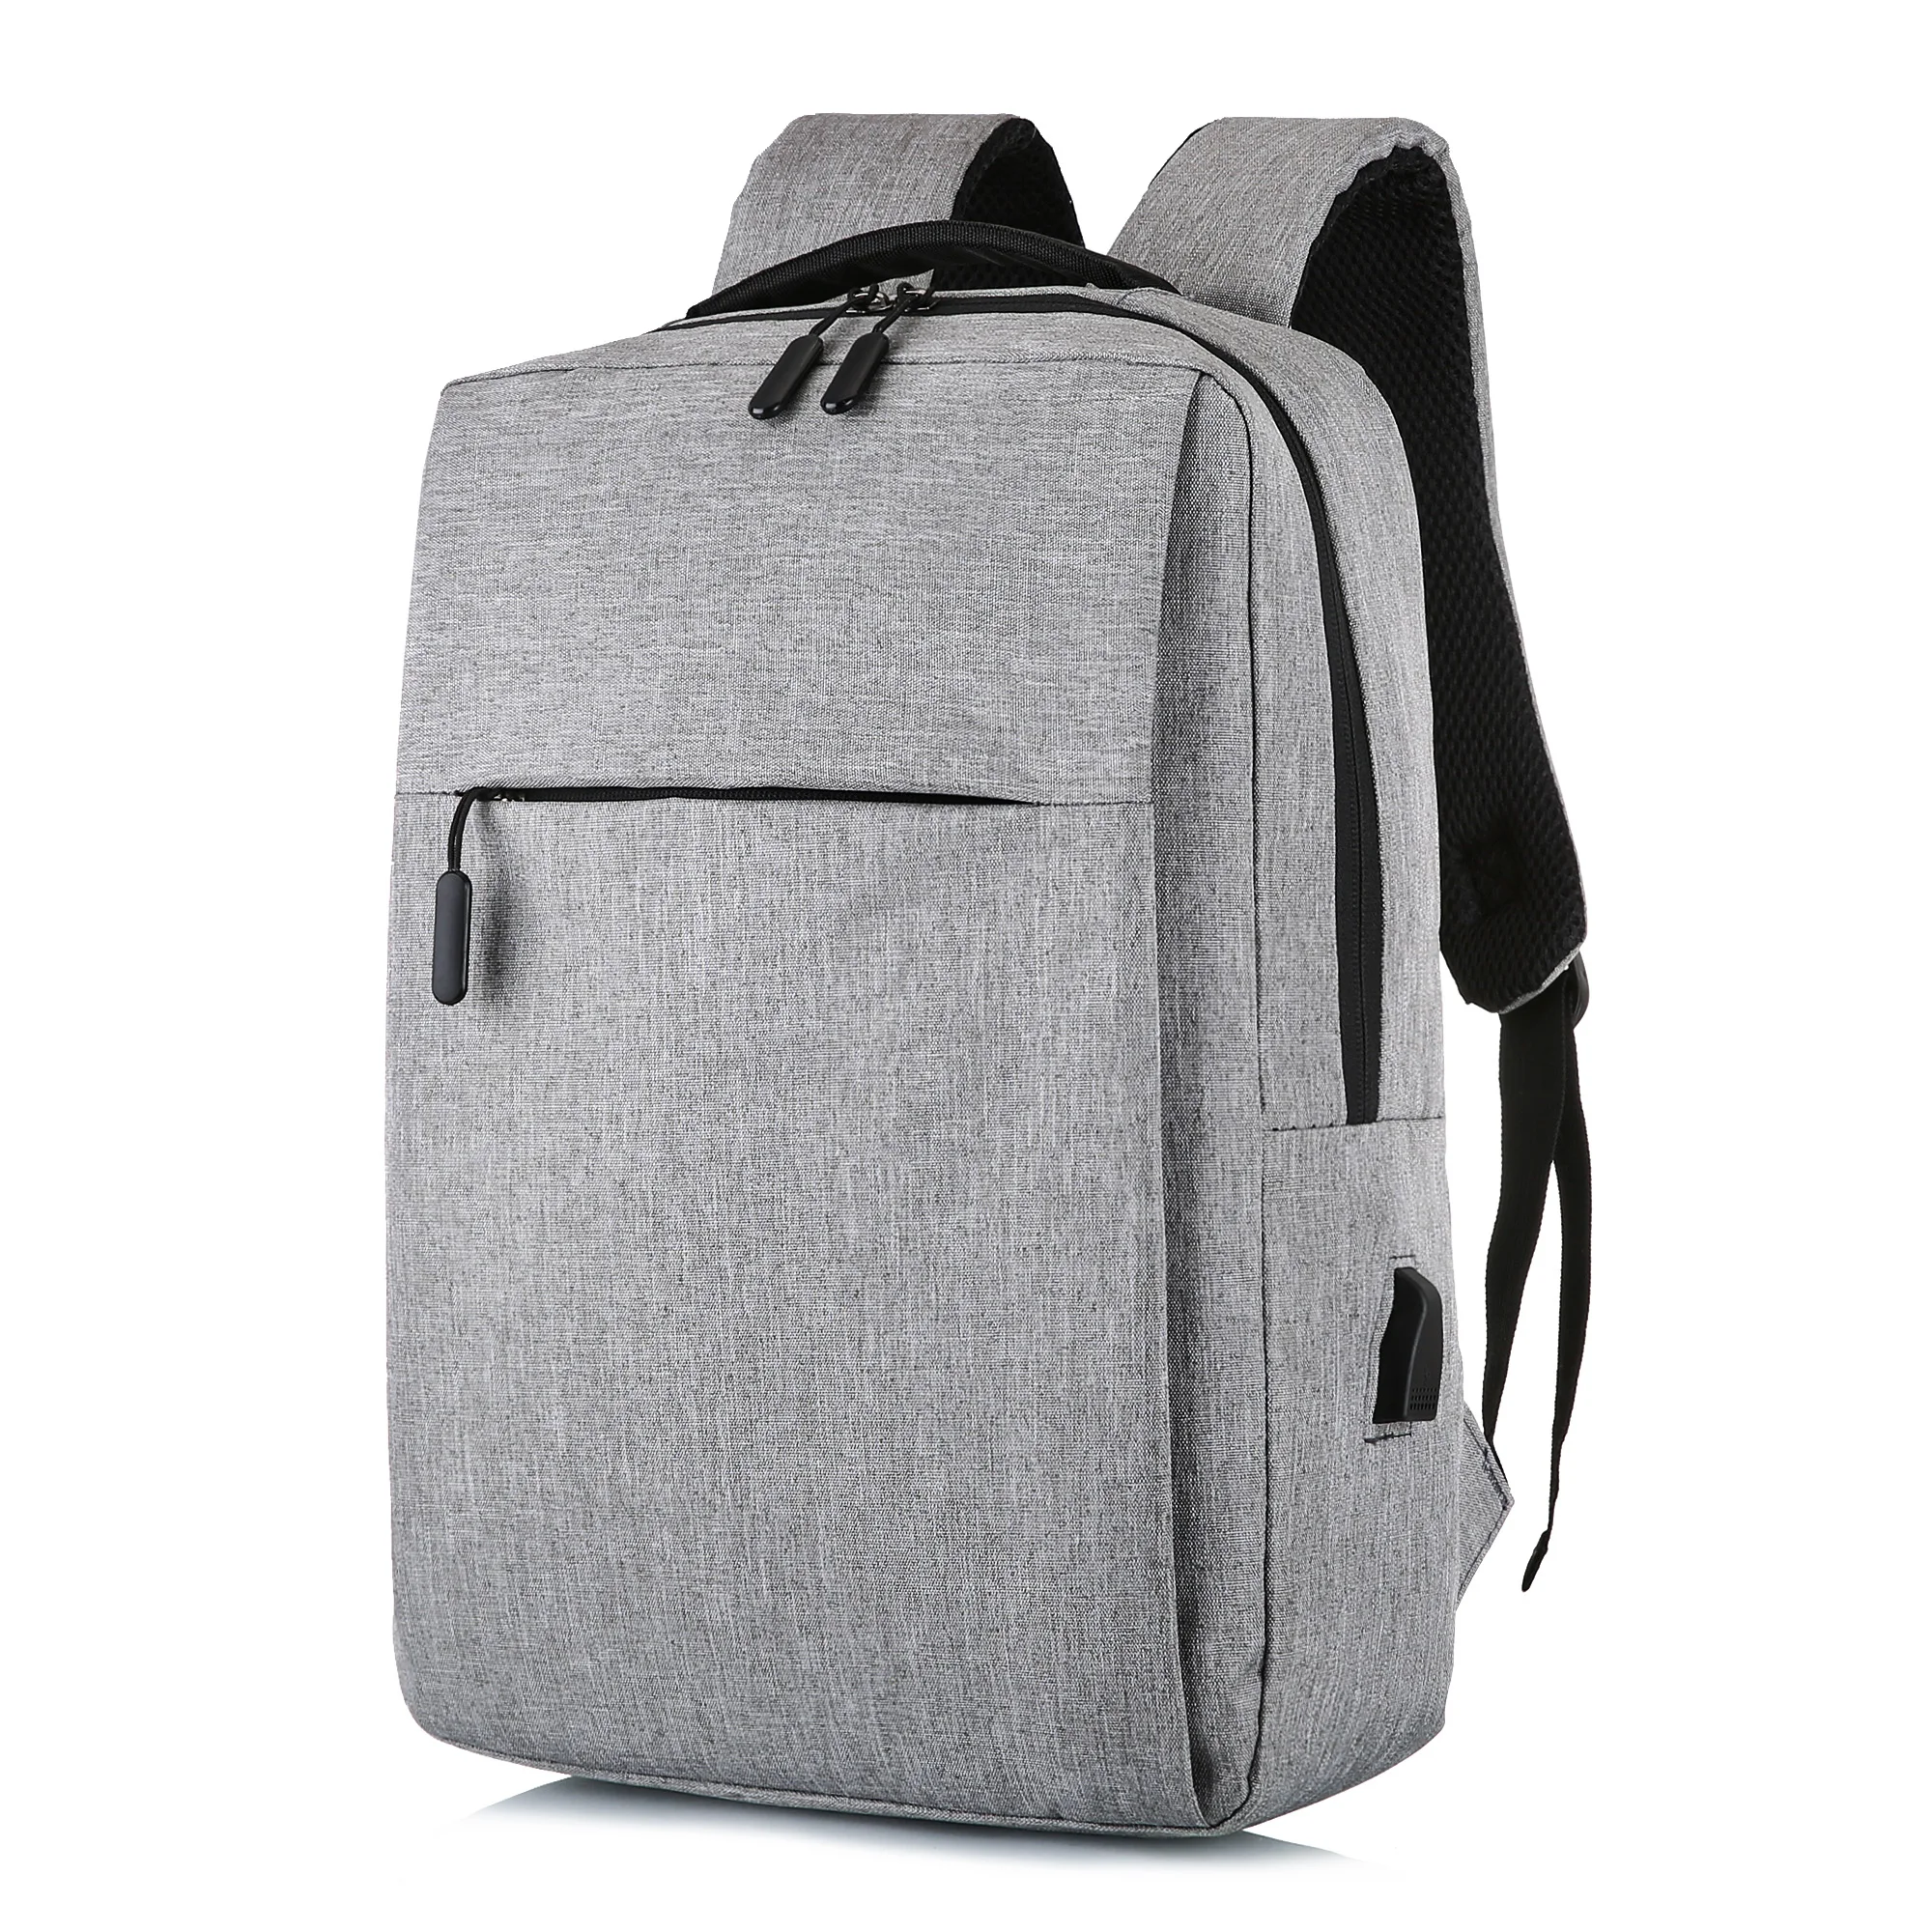 Unisex Boys Girls School Large Backpack Travel Rucksack Shoulder Laptop Bag USB 